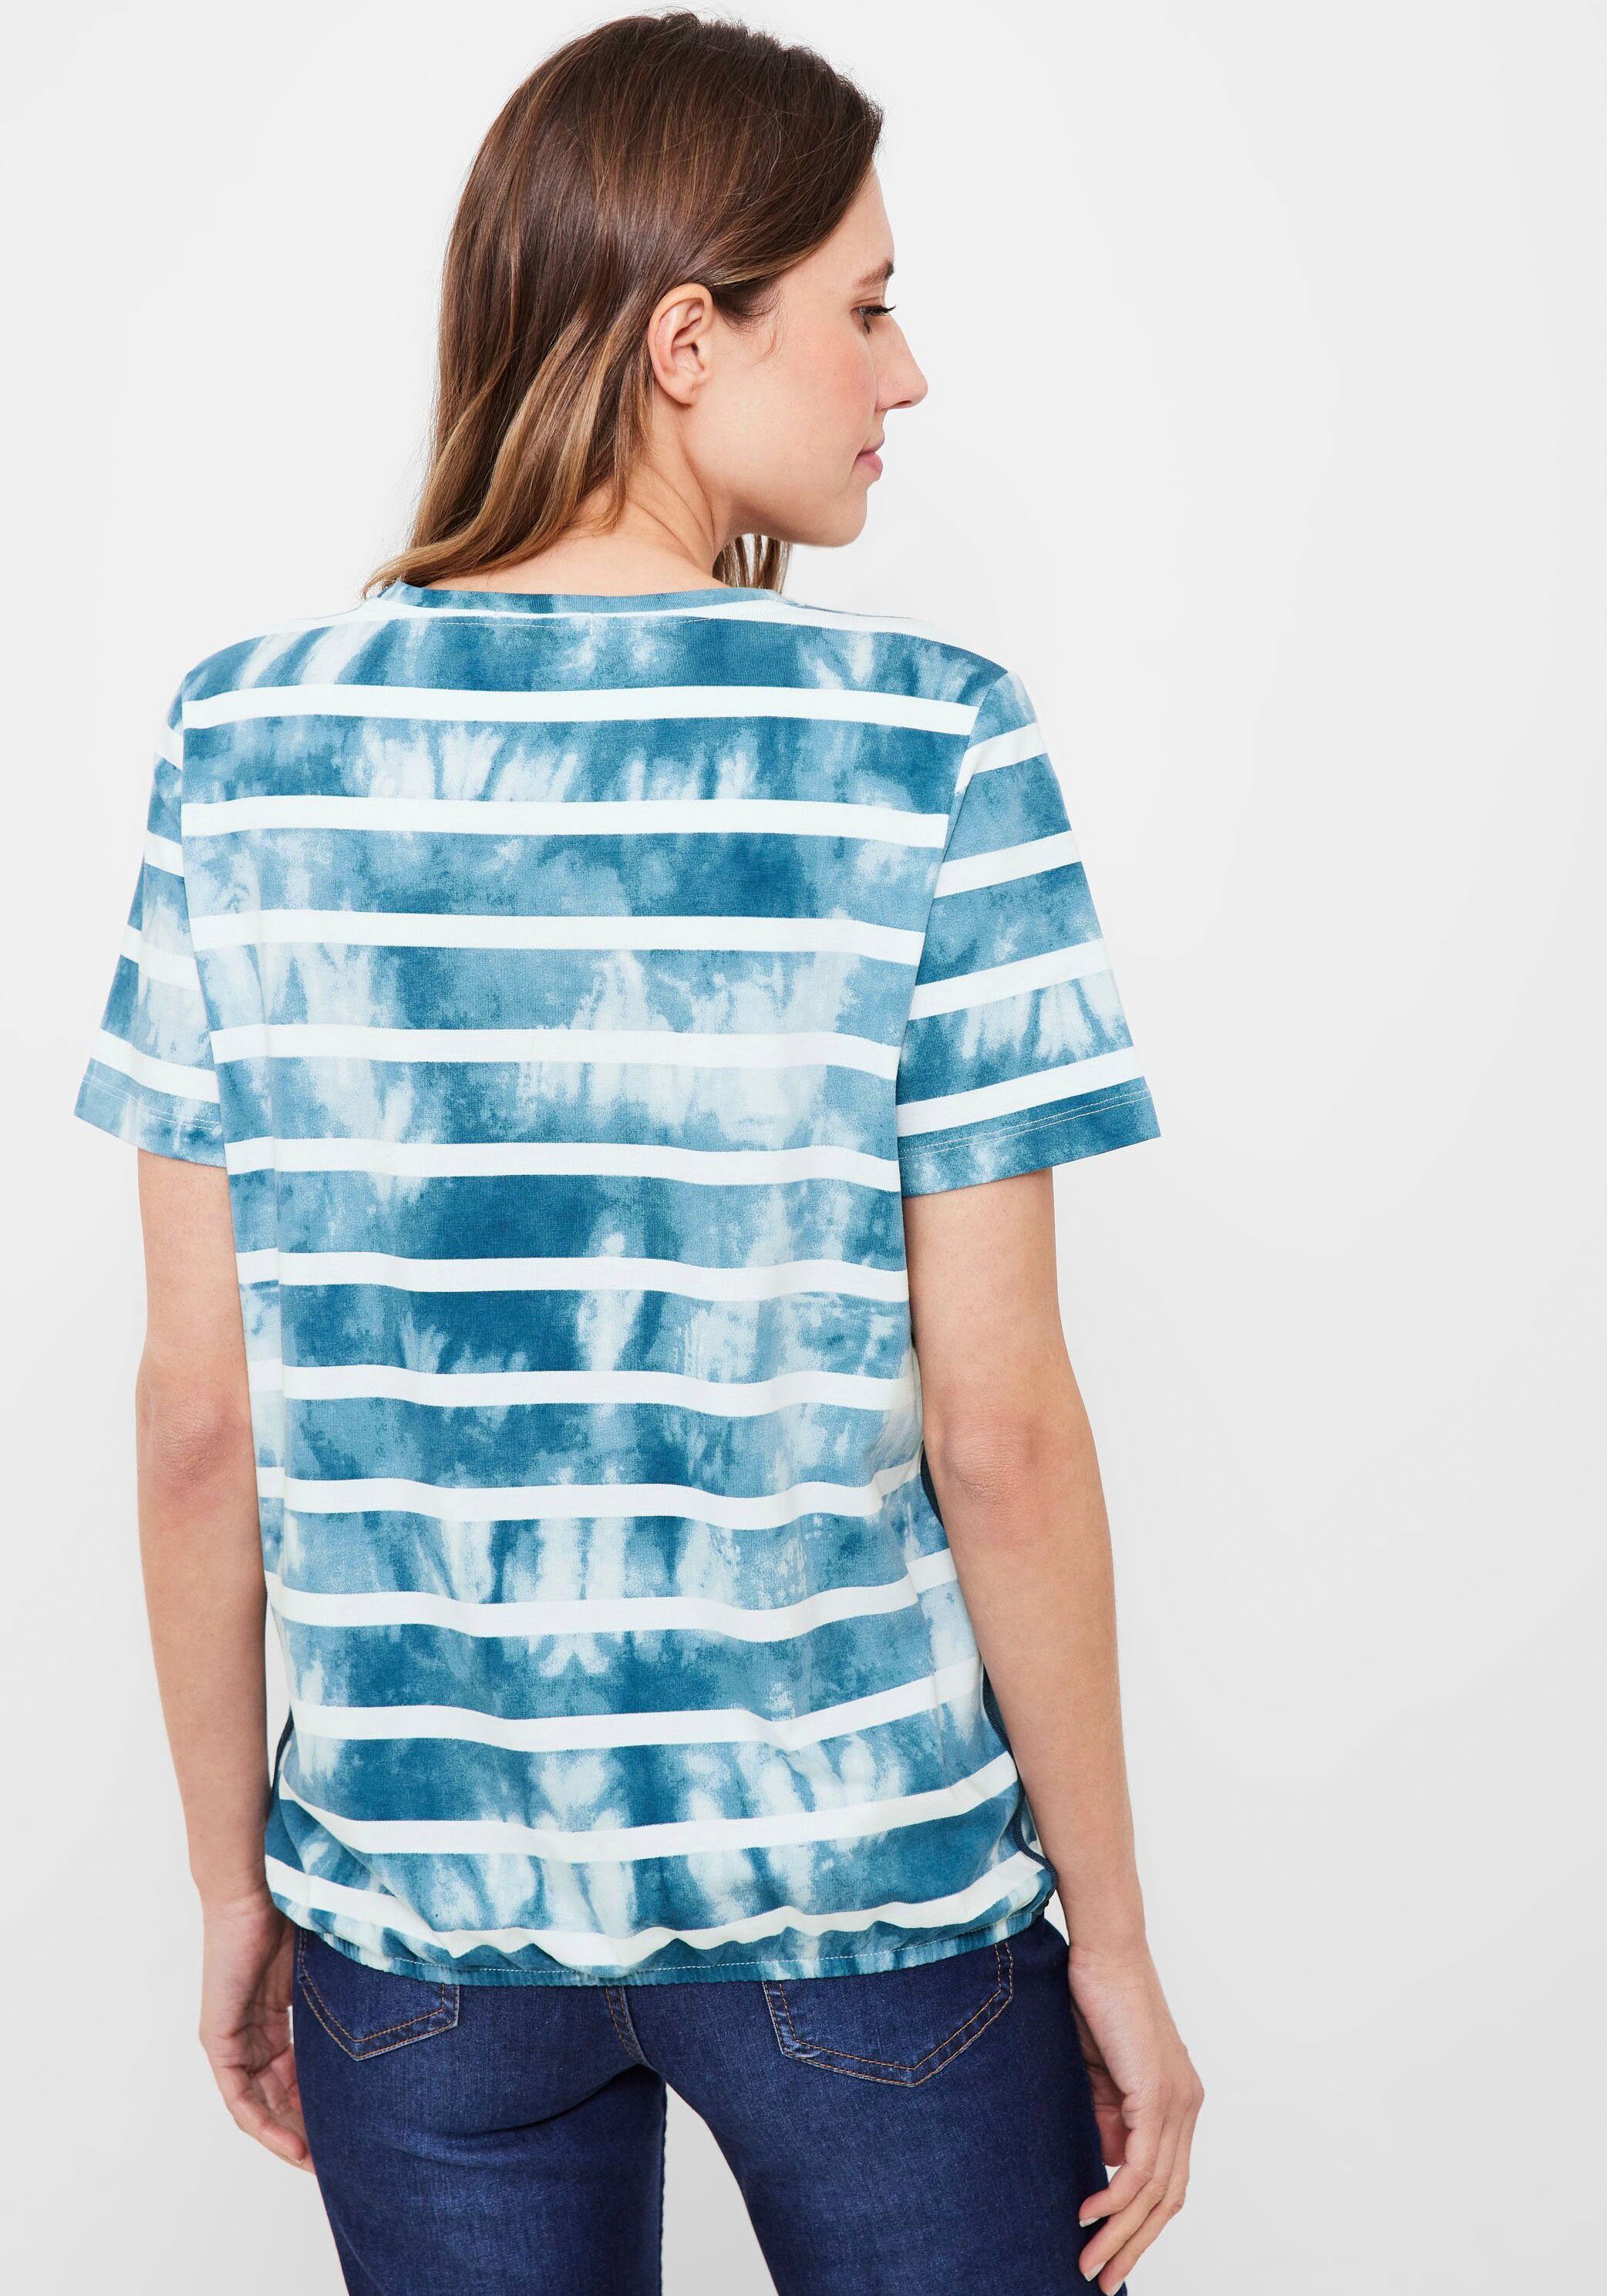 blue Cecil teal Print-Shirt Paillettenverzierung mit